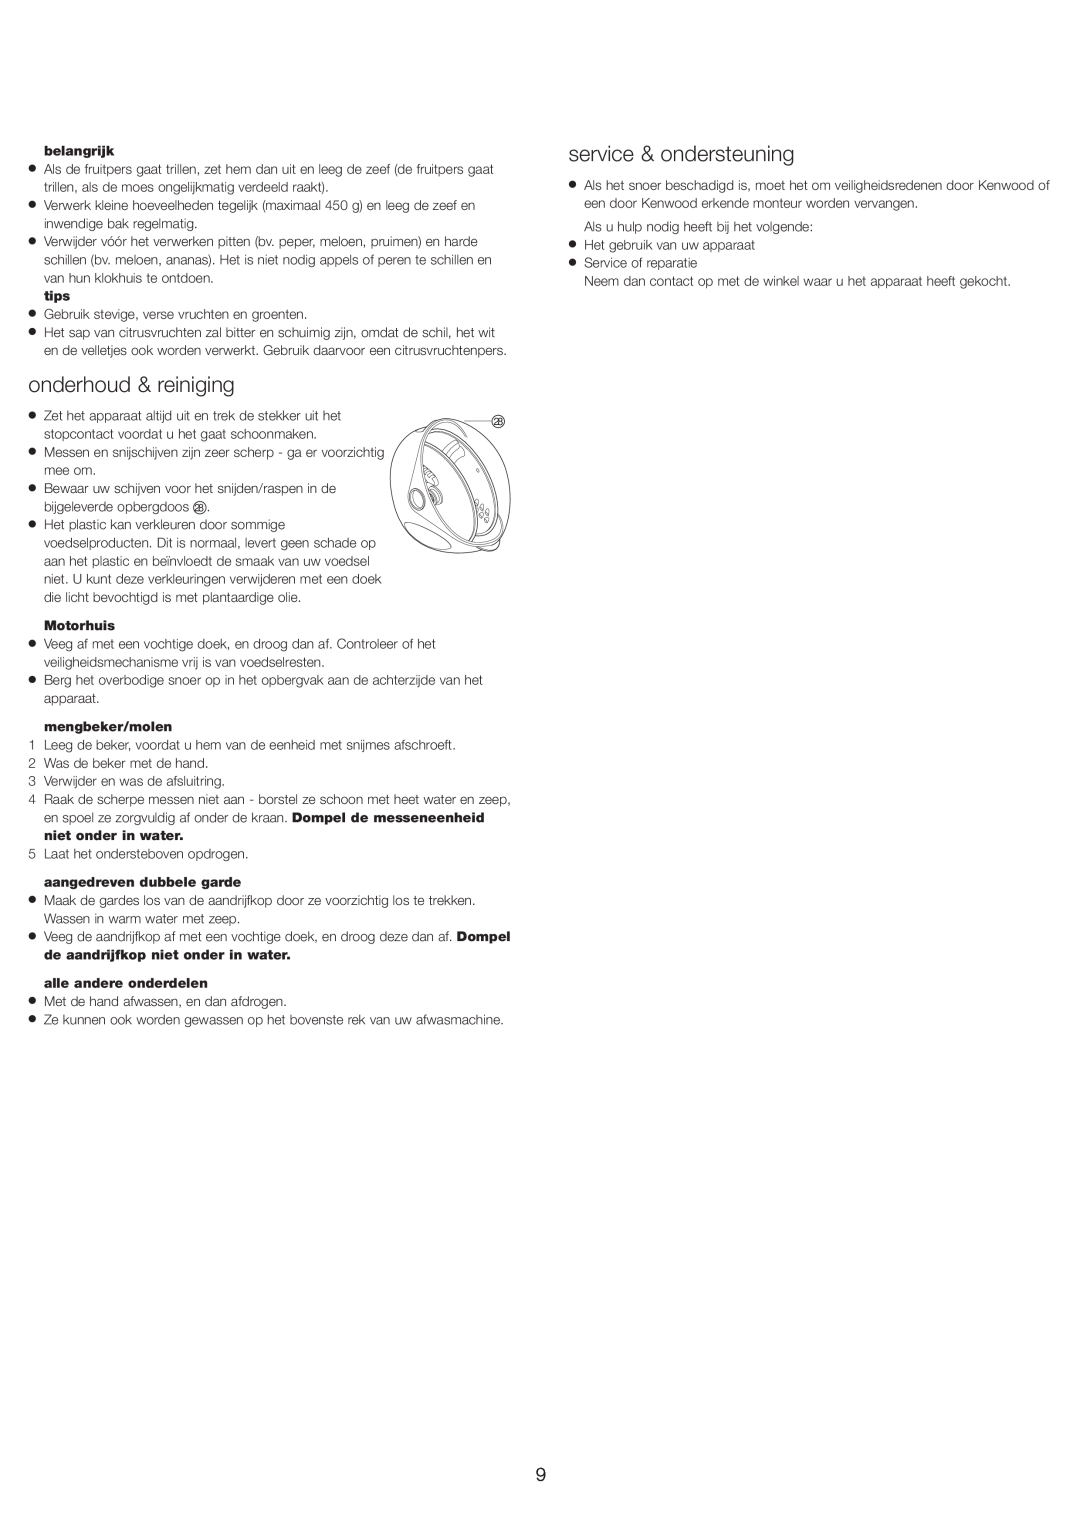 Kenwood FP693 manual onderhoud & reiniging, service & ondersteuning 